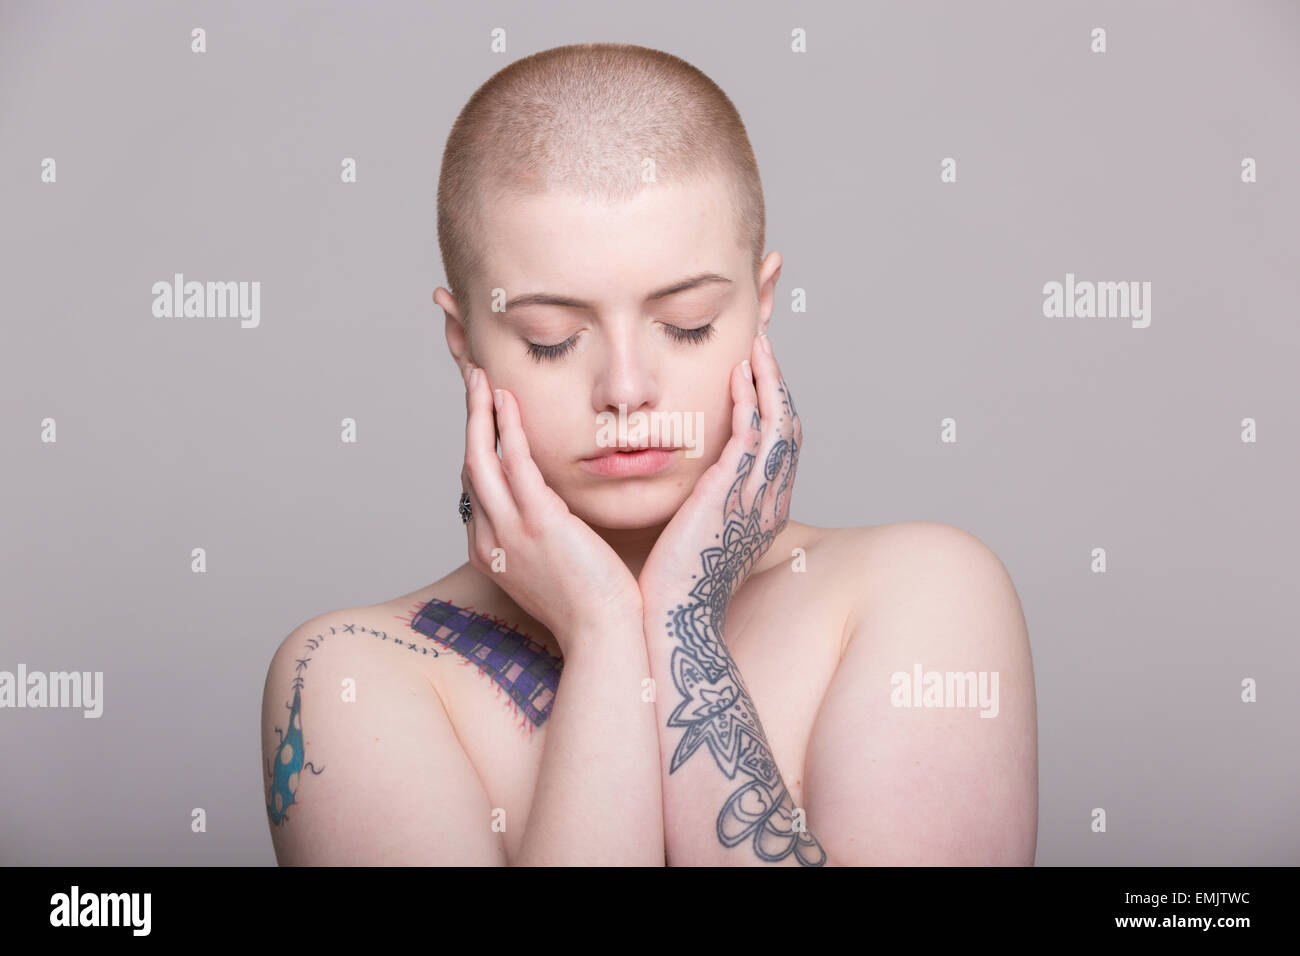 Una mujer joven con la cabeza rapada y tatuajes sobre su hombro, brazos y manos Foto de stock